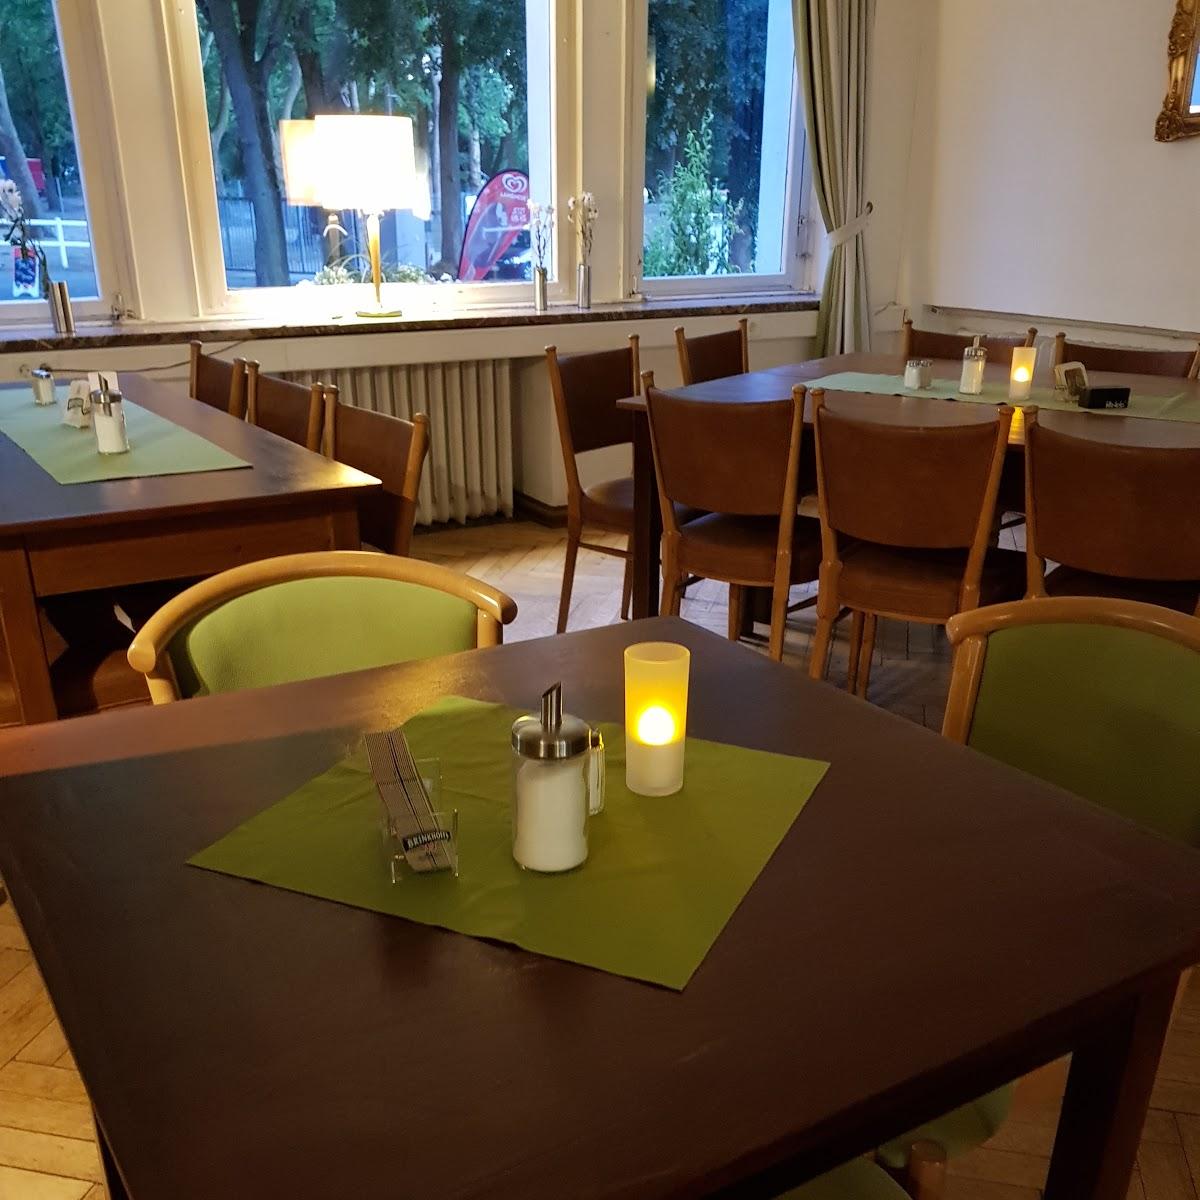 Restaurant "Gastronomie Hufeisen" in Dortmund